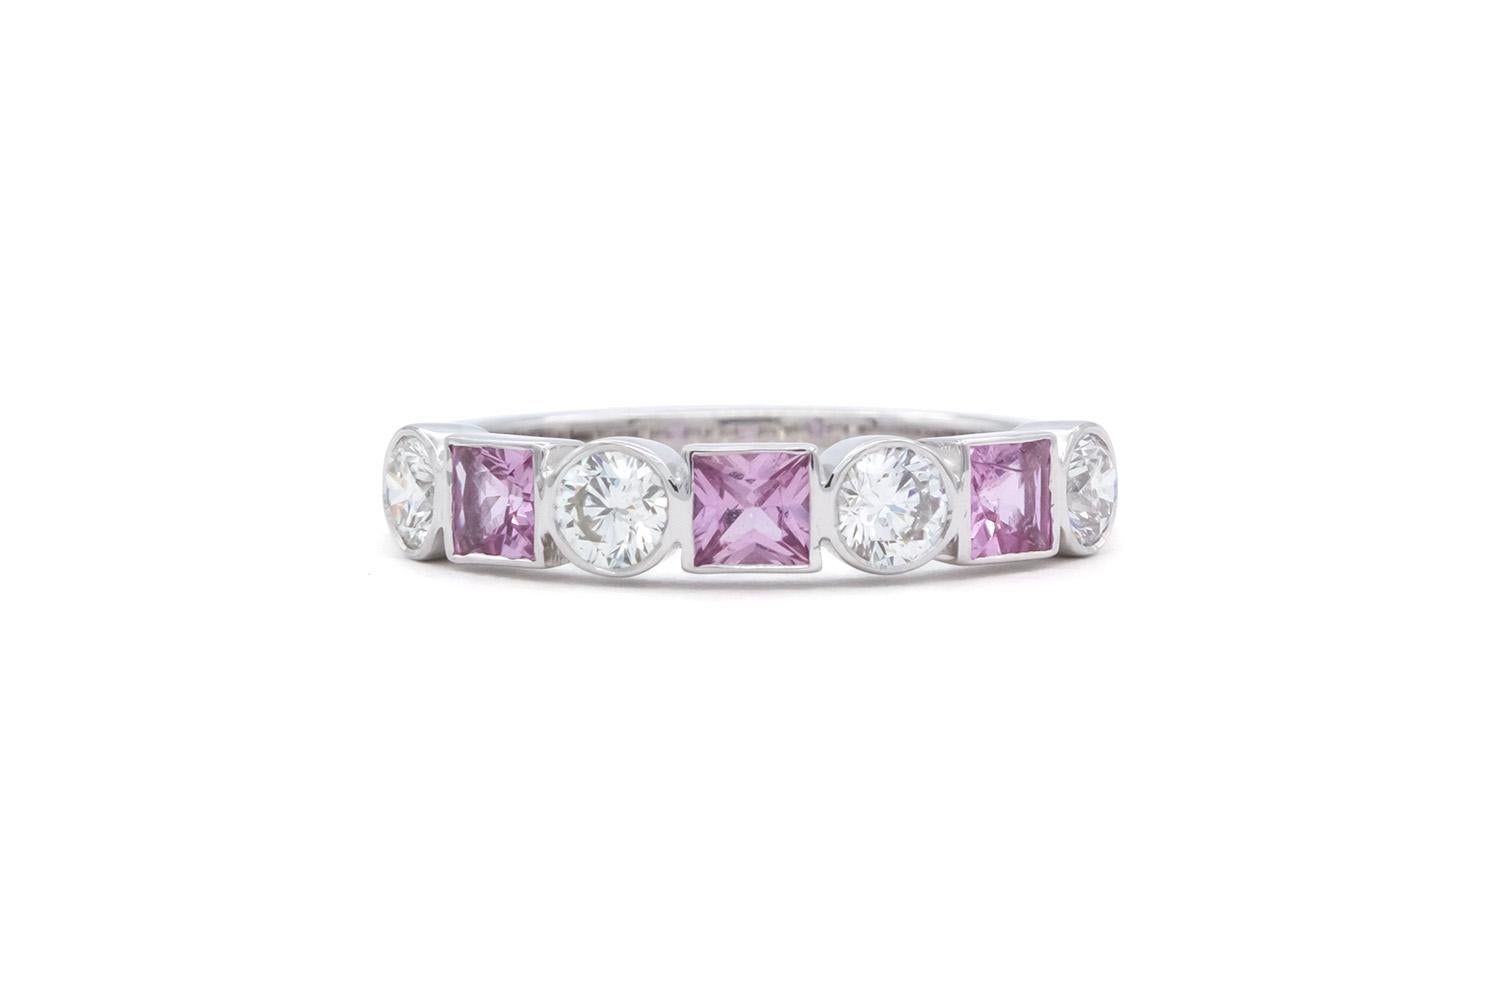 Wir freuen uns, diese 14k Weißgold rosa Saphir & Diamant Mode Stacking Ring bieten. Diese atemberaubende Ring-Funktion 0,33ctw natürlichen Prinzessin geschnitten rosa Saphiren akzentuiert durch 0,40ctw G-H/VS-SI runde Brillanten alle Lünette in